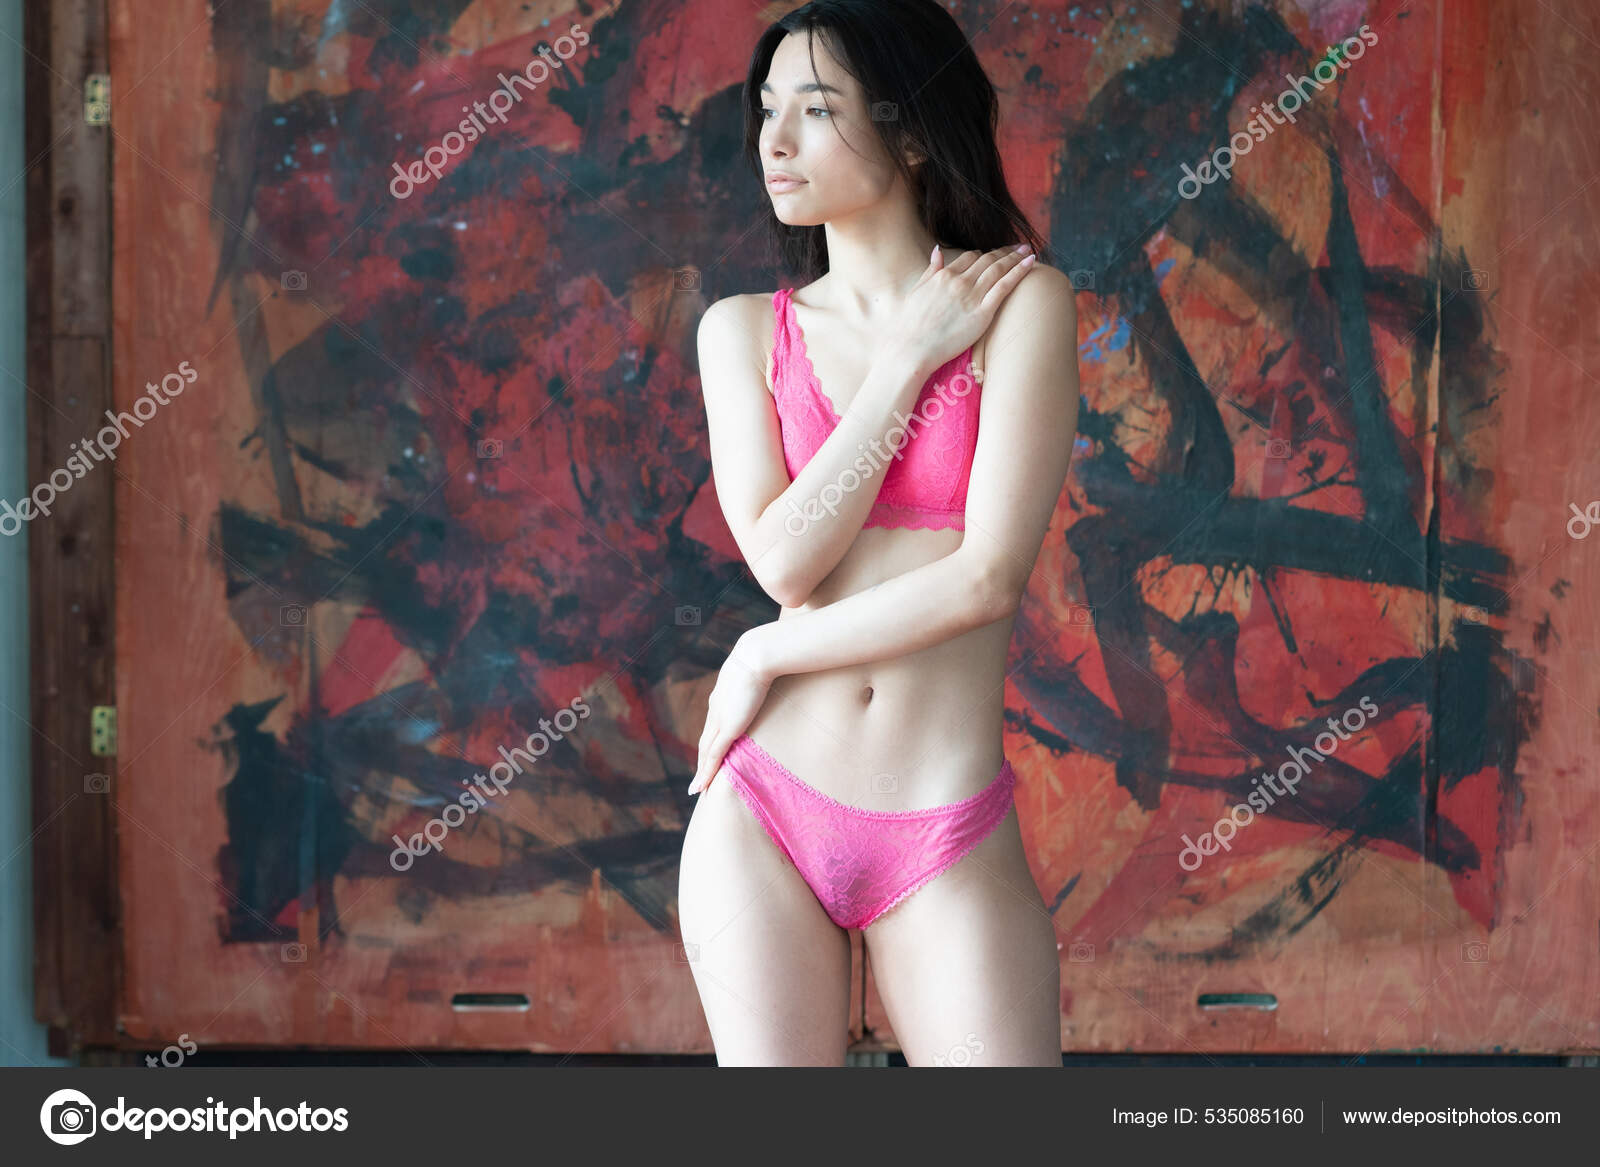 https://st.depositphotos.com/10086424/53508/i/1600/depositphotos_535085160-stock-photo-young-beautiful-woman-posing-red.jpg